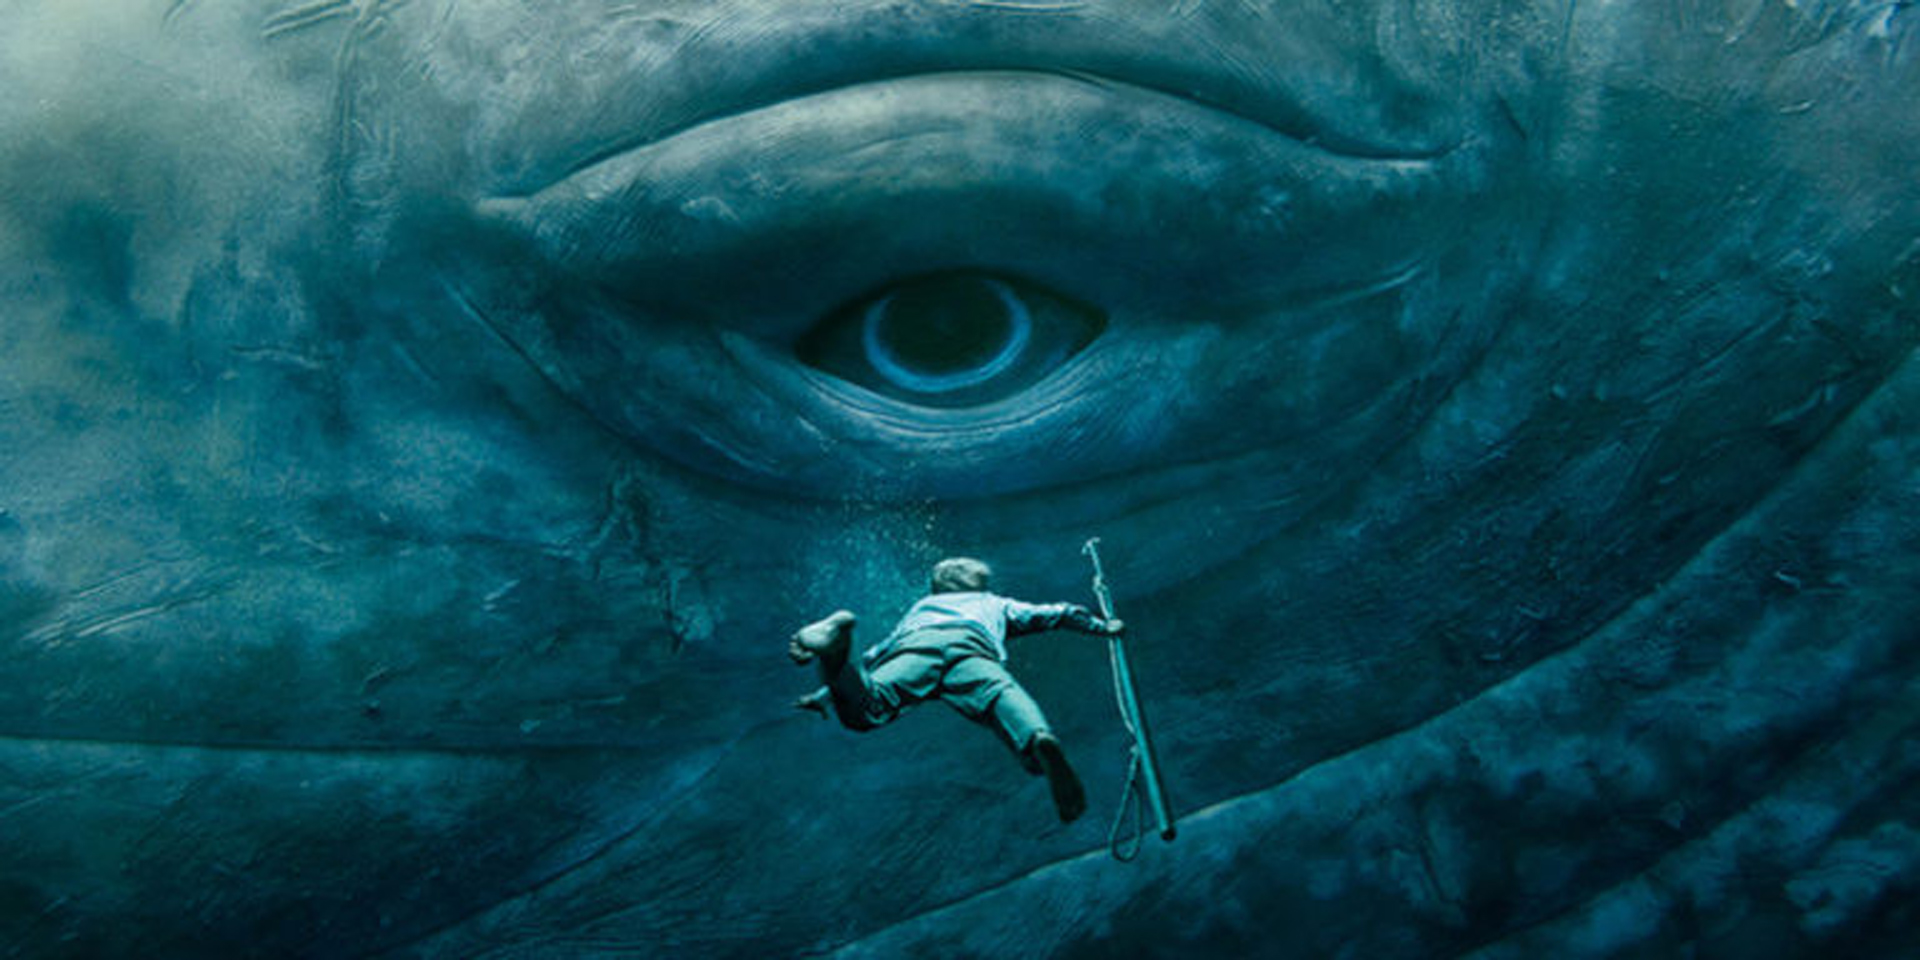 Moby Dick de Herman Melville es uno de los grandes textos de aventuras que ha influenciado a más de una generación de artistas